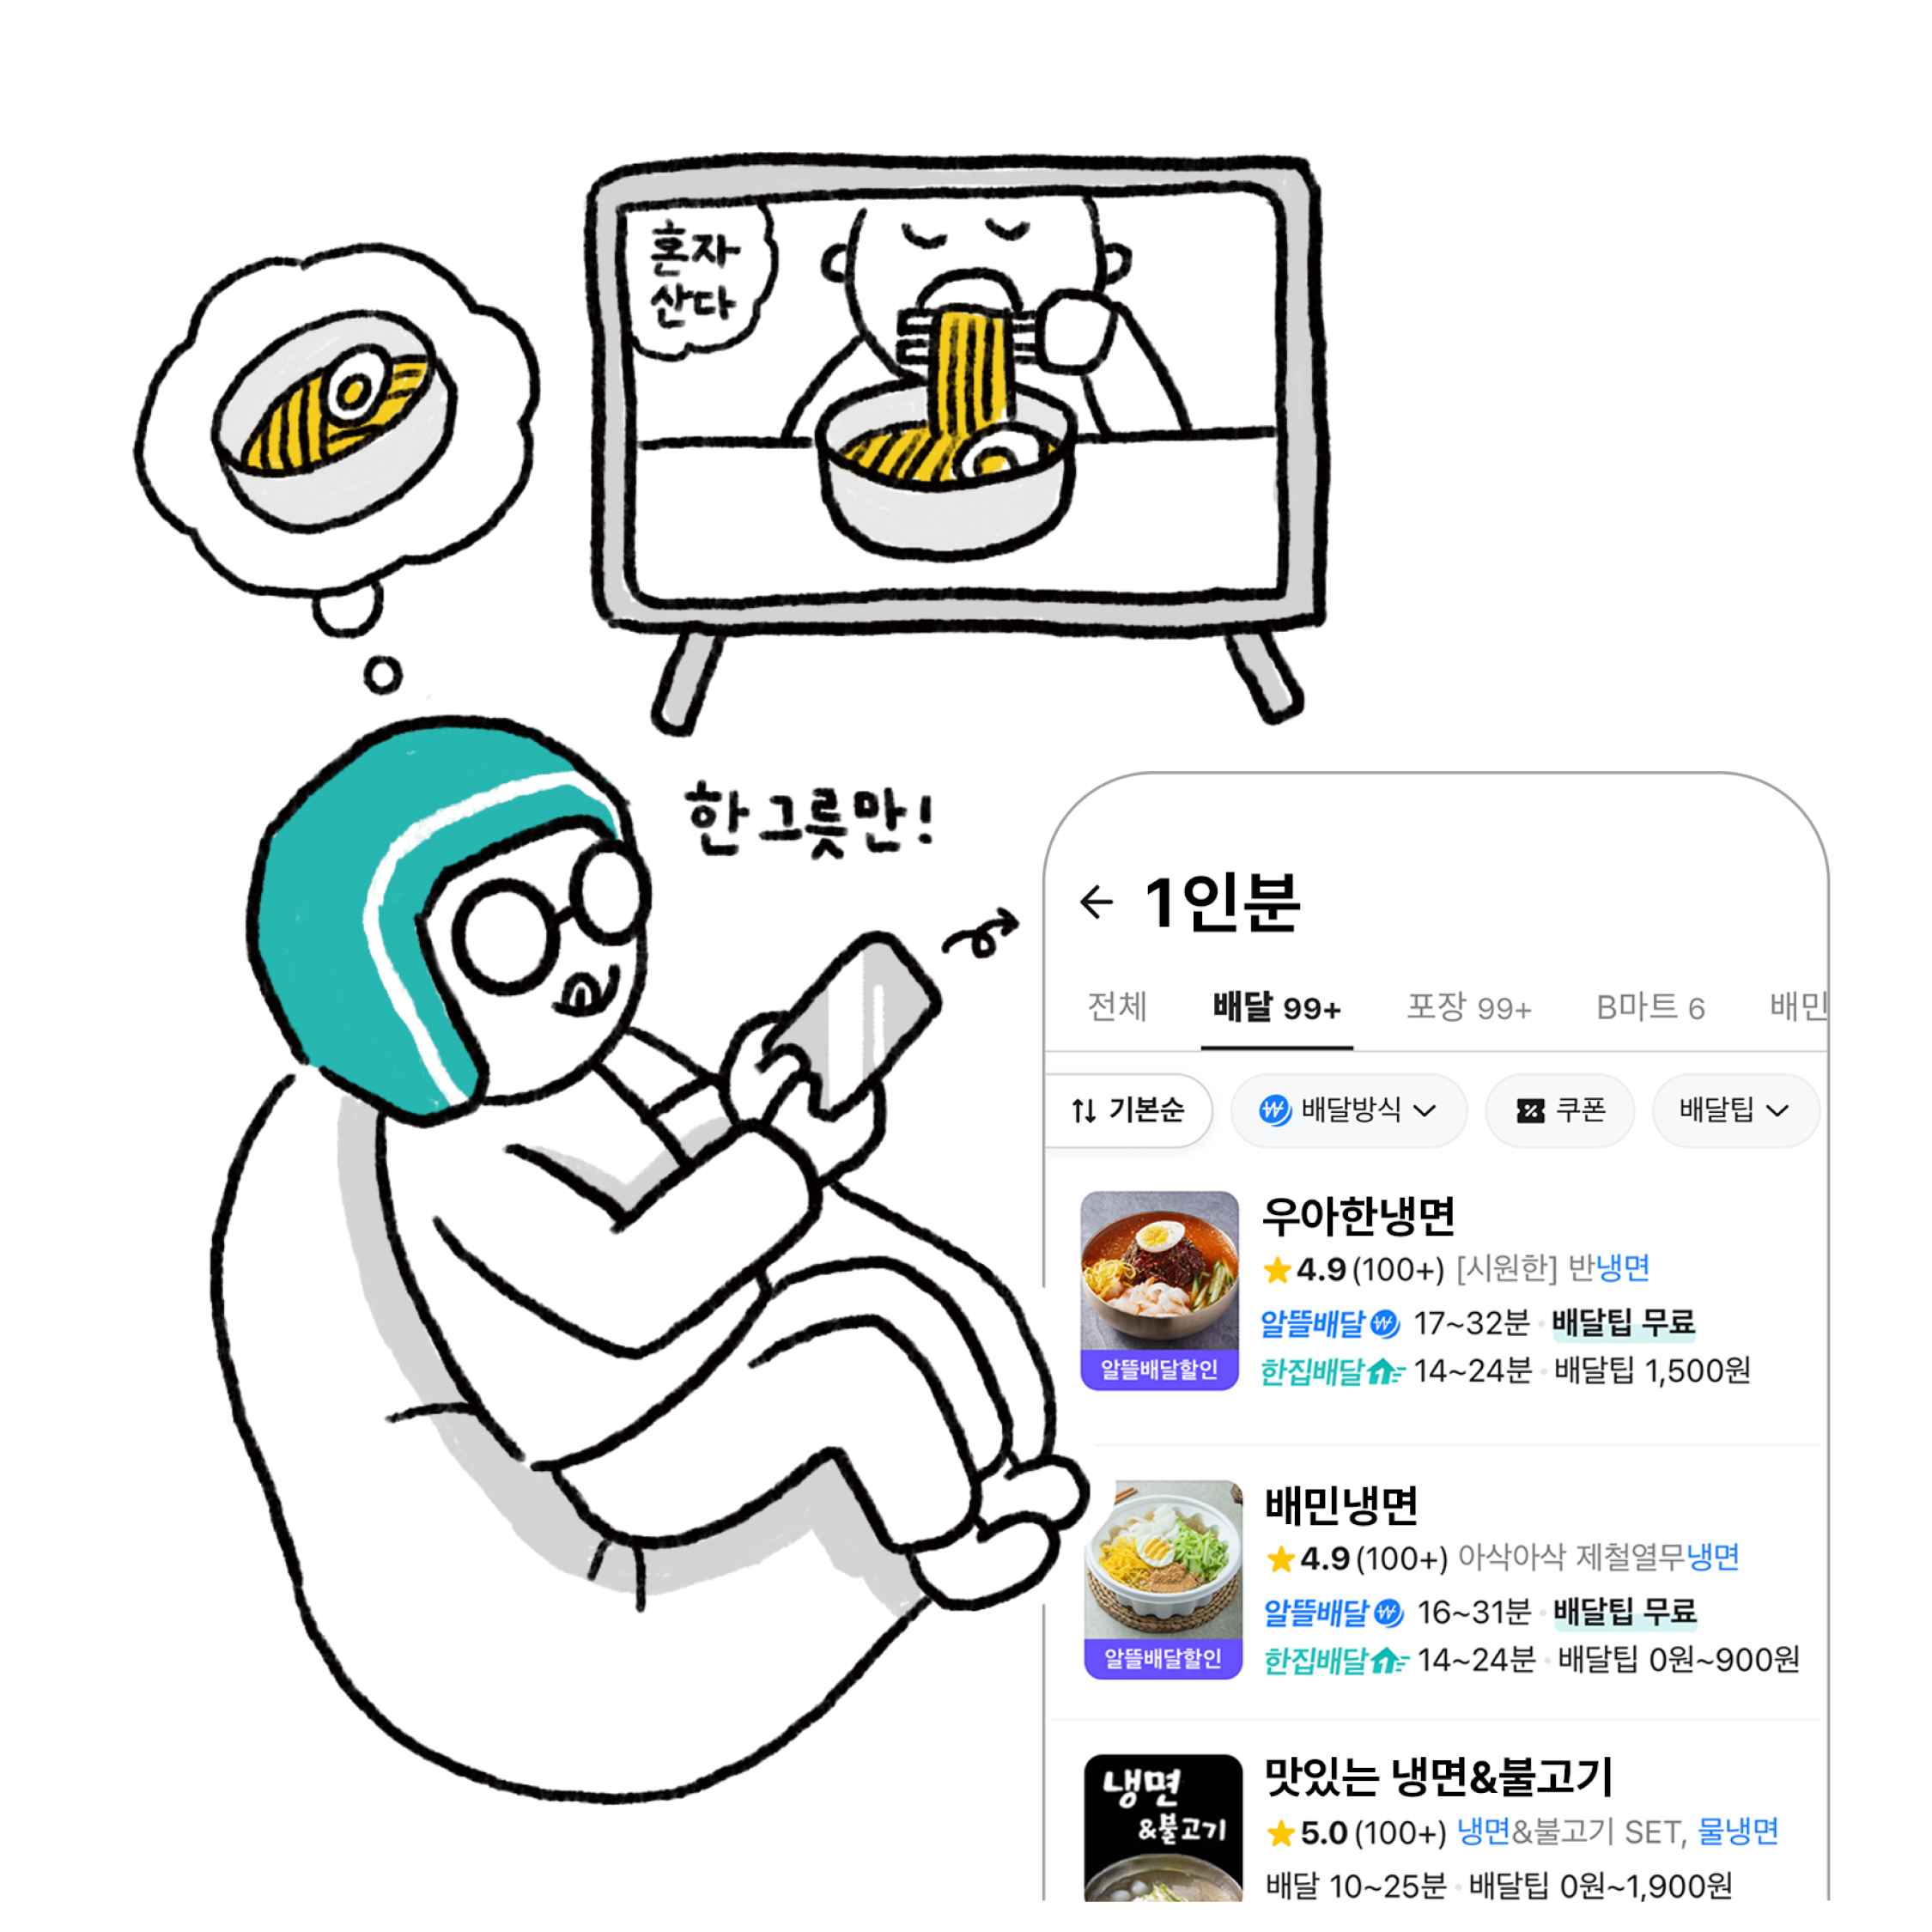 배달이가 TV에서 음식을 먹는 장면을 보고 있는 그림이다. 그리고 배달앱을 켜서 1인분 음식을 주문하는 스마트폰 화면이 강조되어 있다.